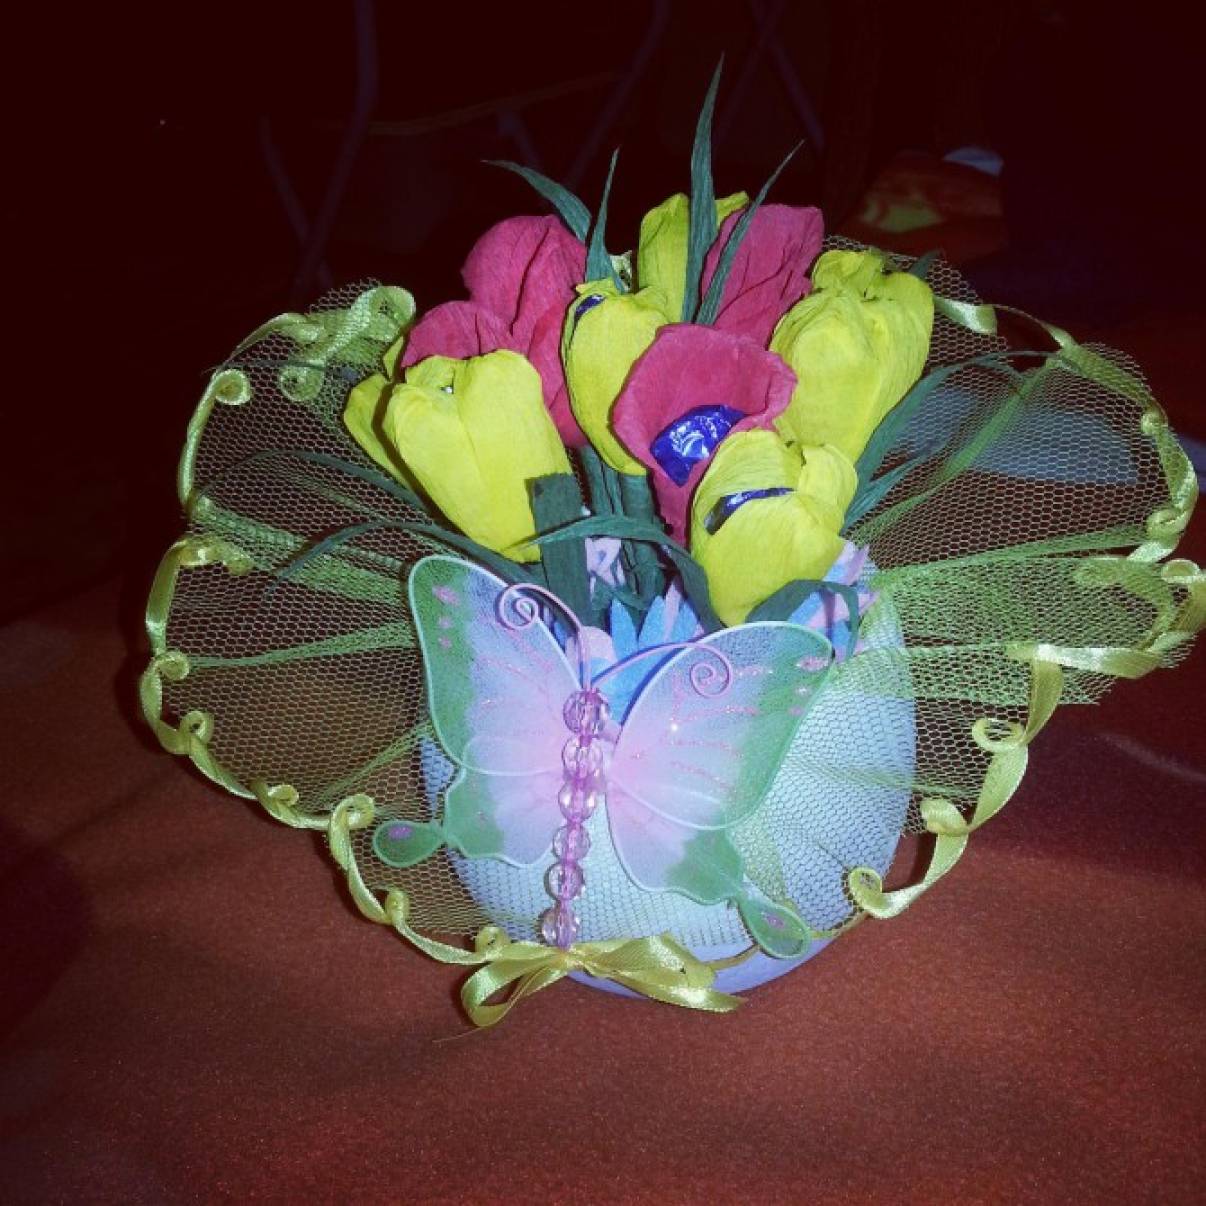 Солодкі букетики з паперових квітів   Букети з цукерок - ідеальний подарунок для мам, бабусь, подруг і колег